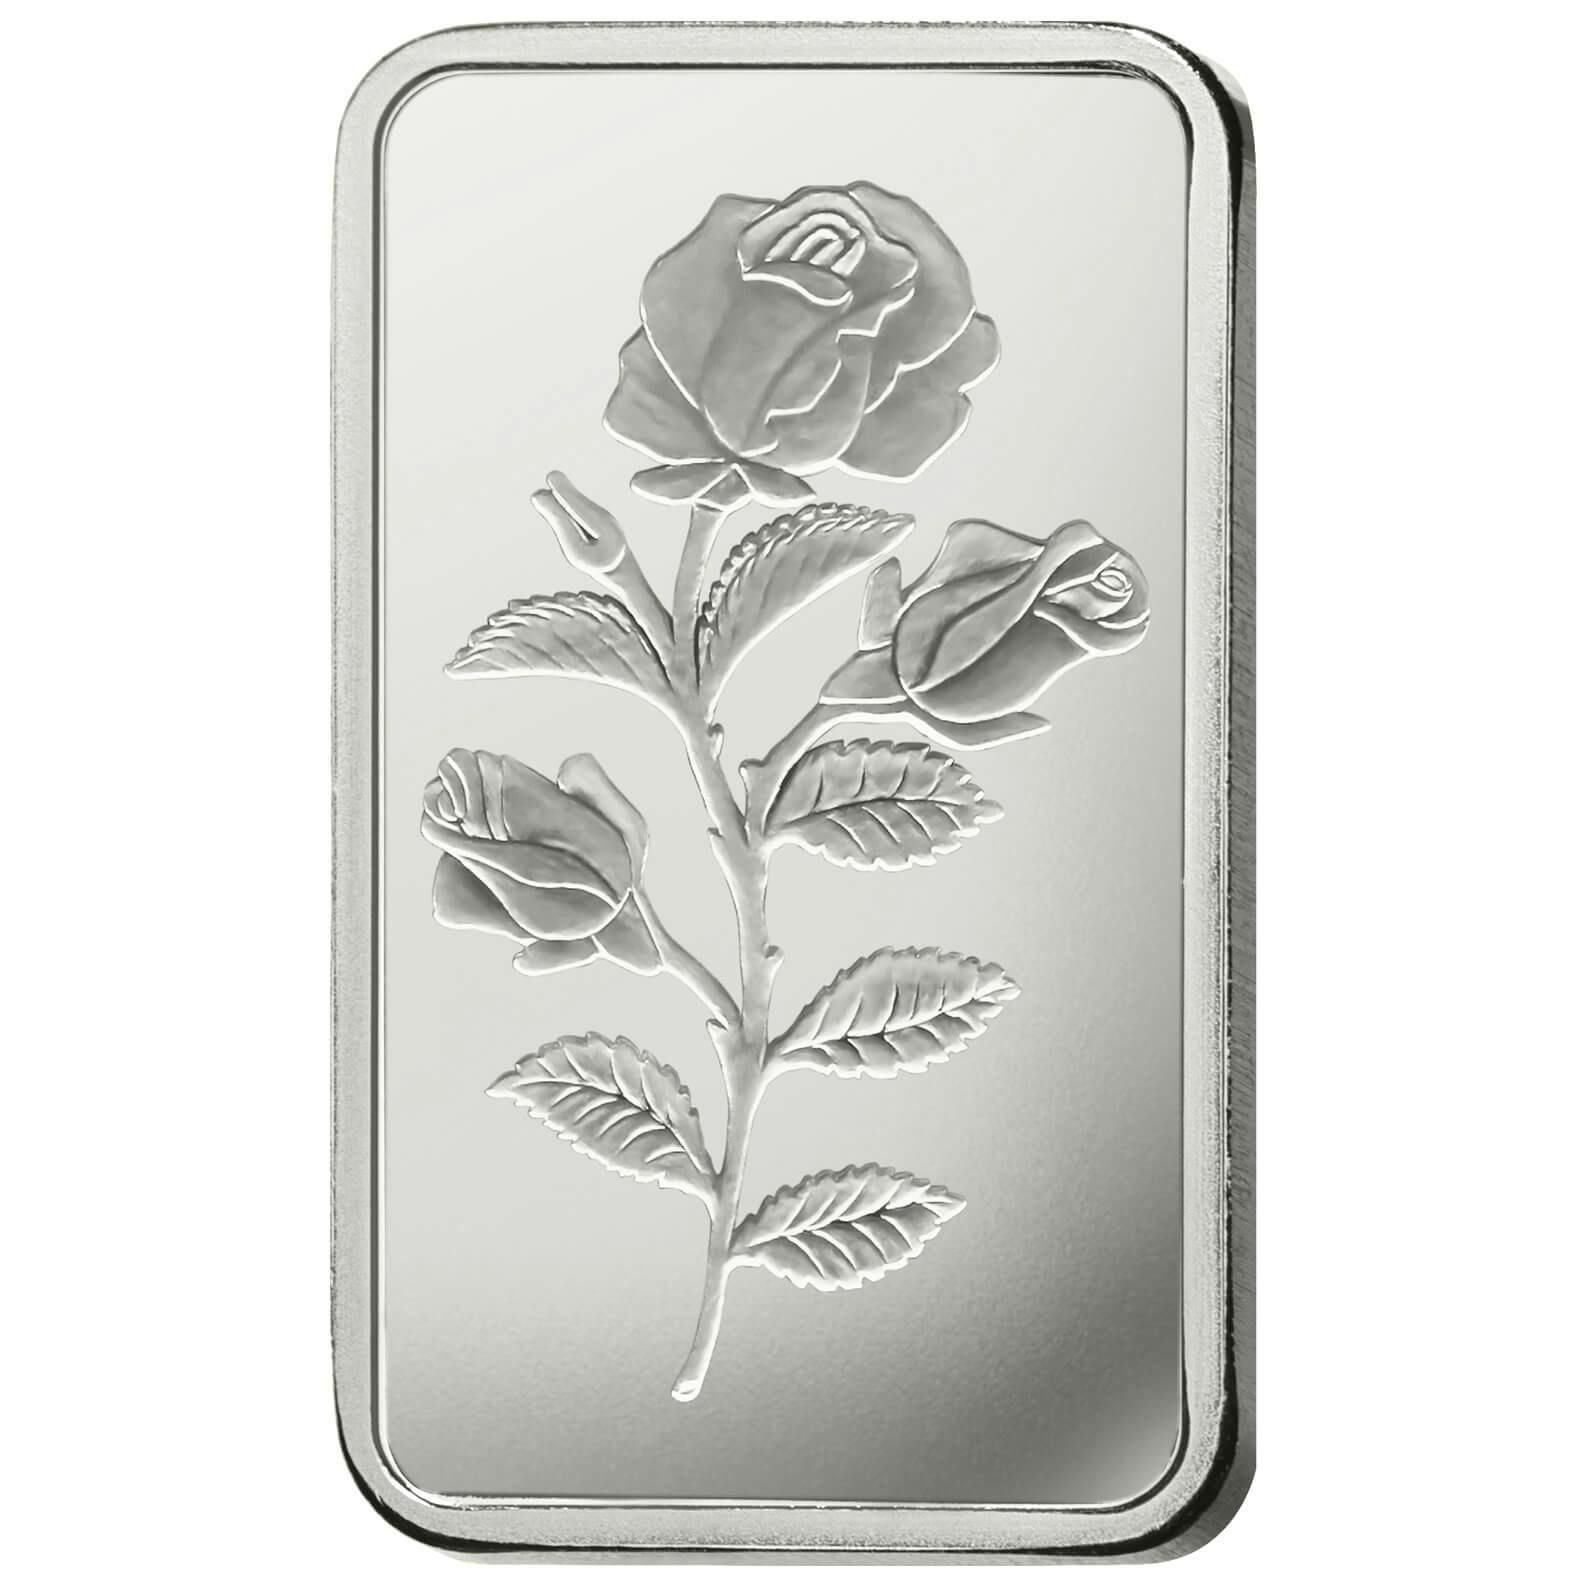 Compare argento, 100 grammi d'argento puro Rosa - PAMP Svizzera - Front